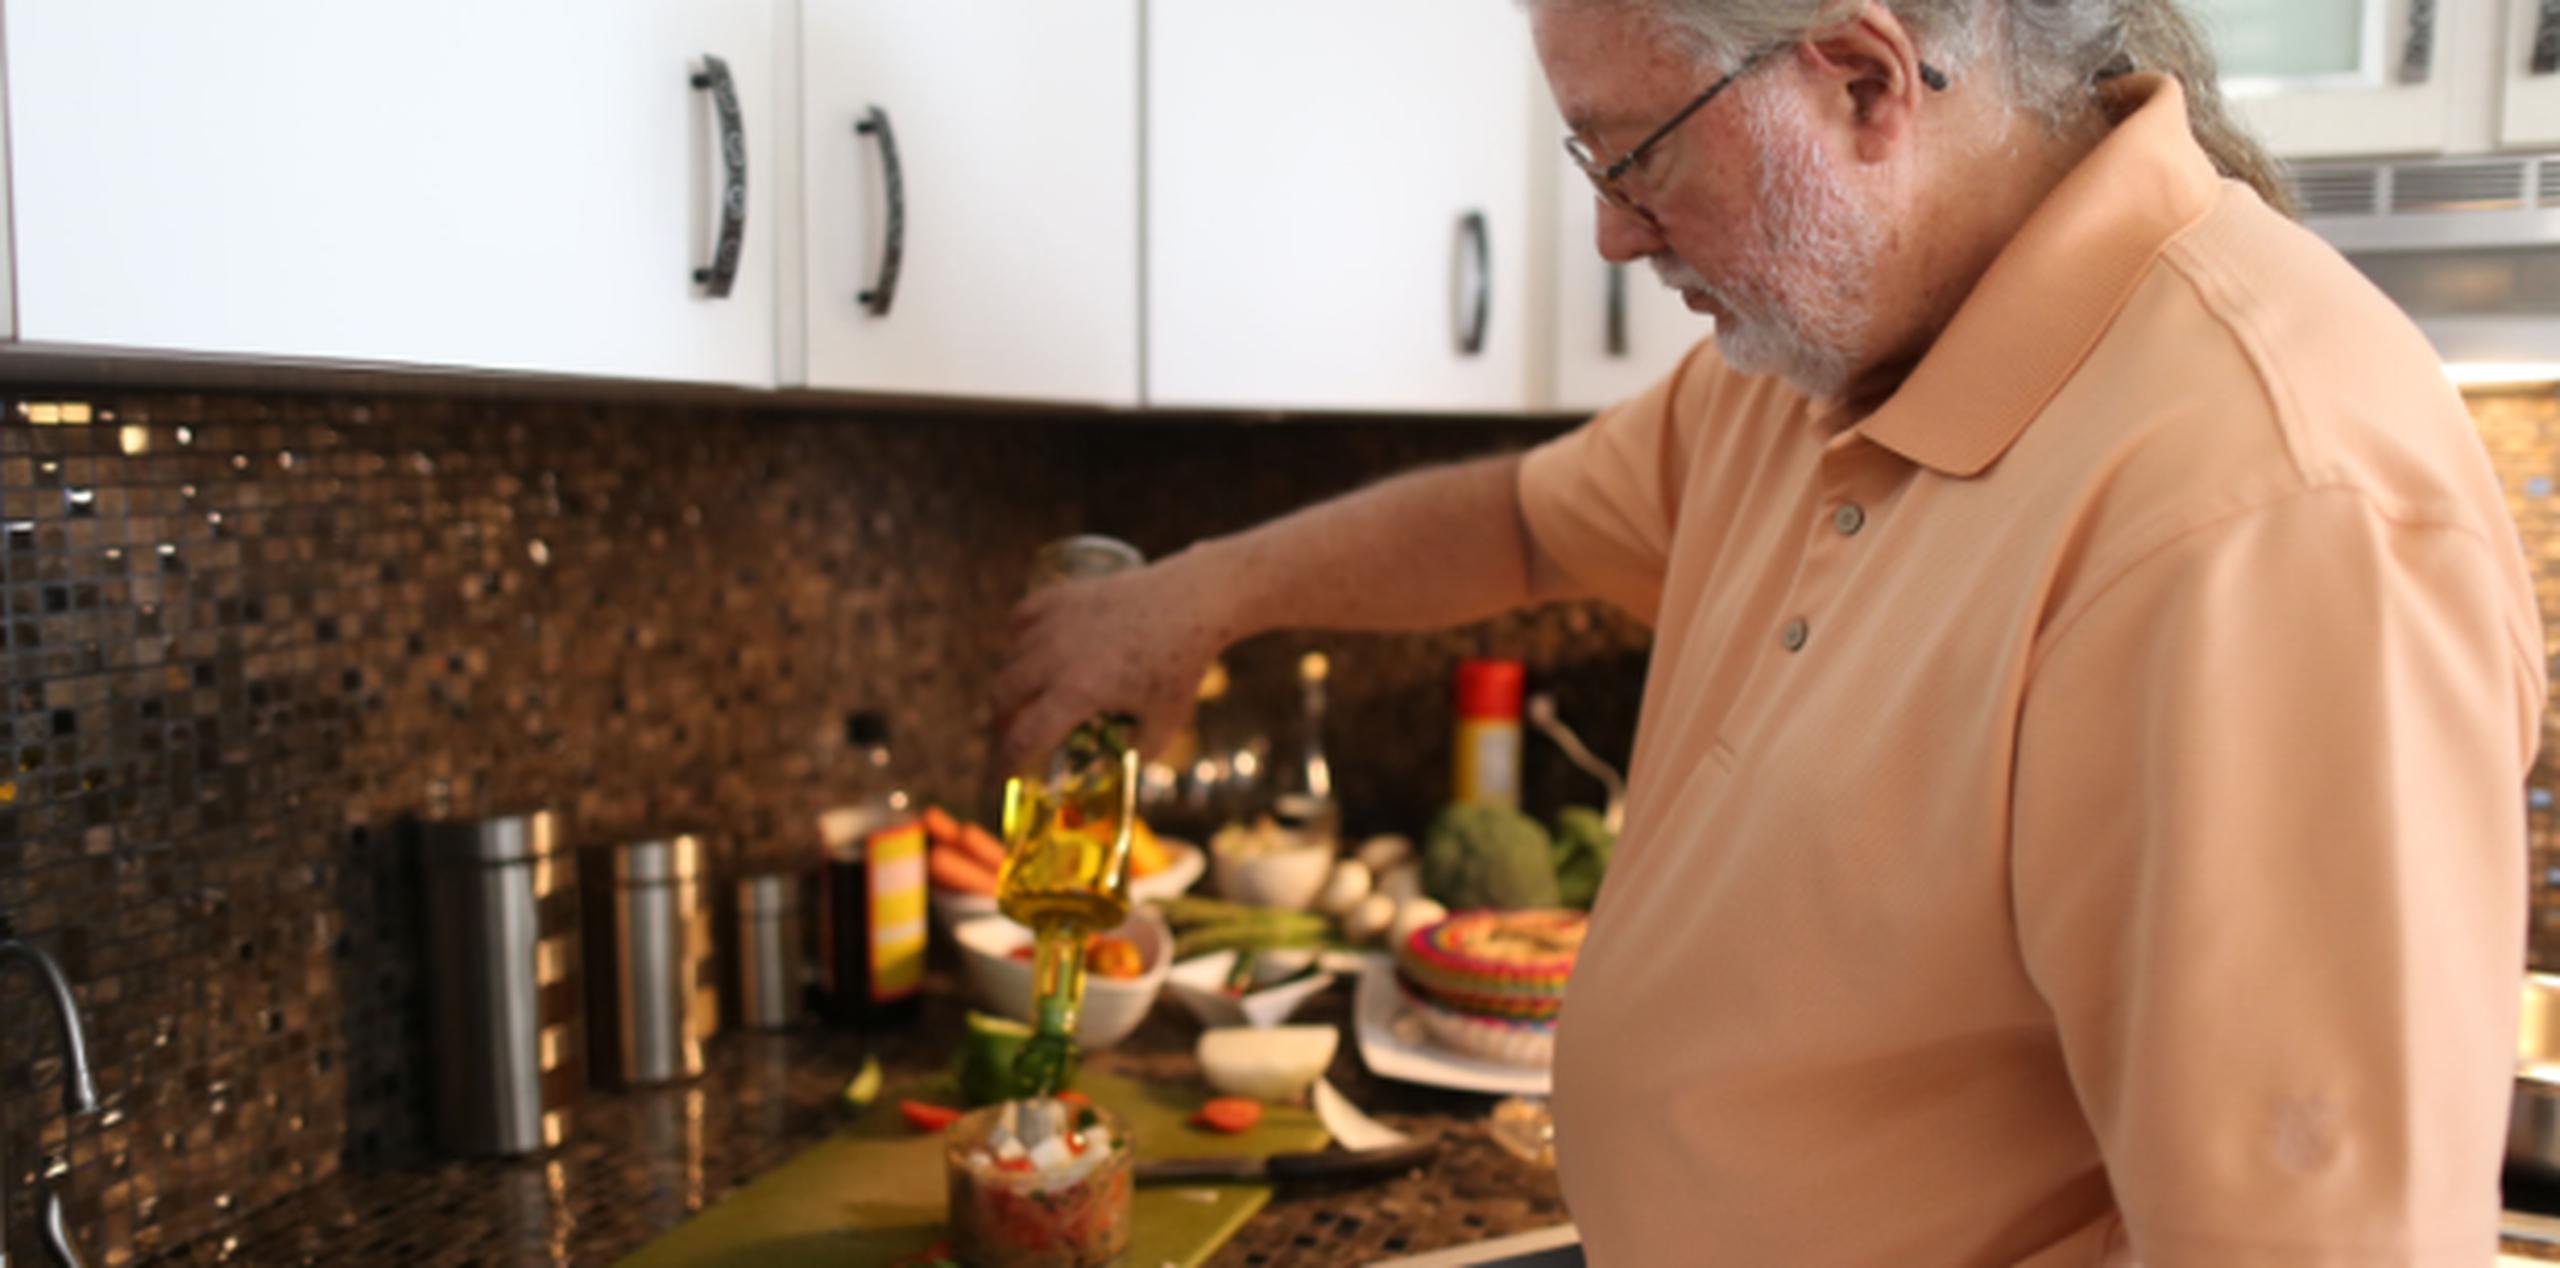 Roy Brown preparando uno de sus platos vegetarianos. (vanessa.serra@gfrmedia.com)